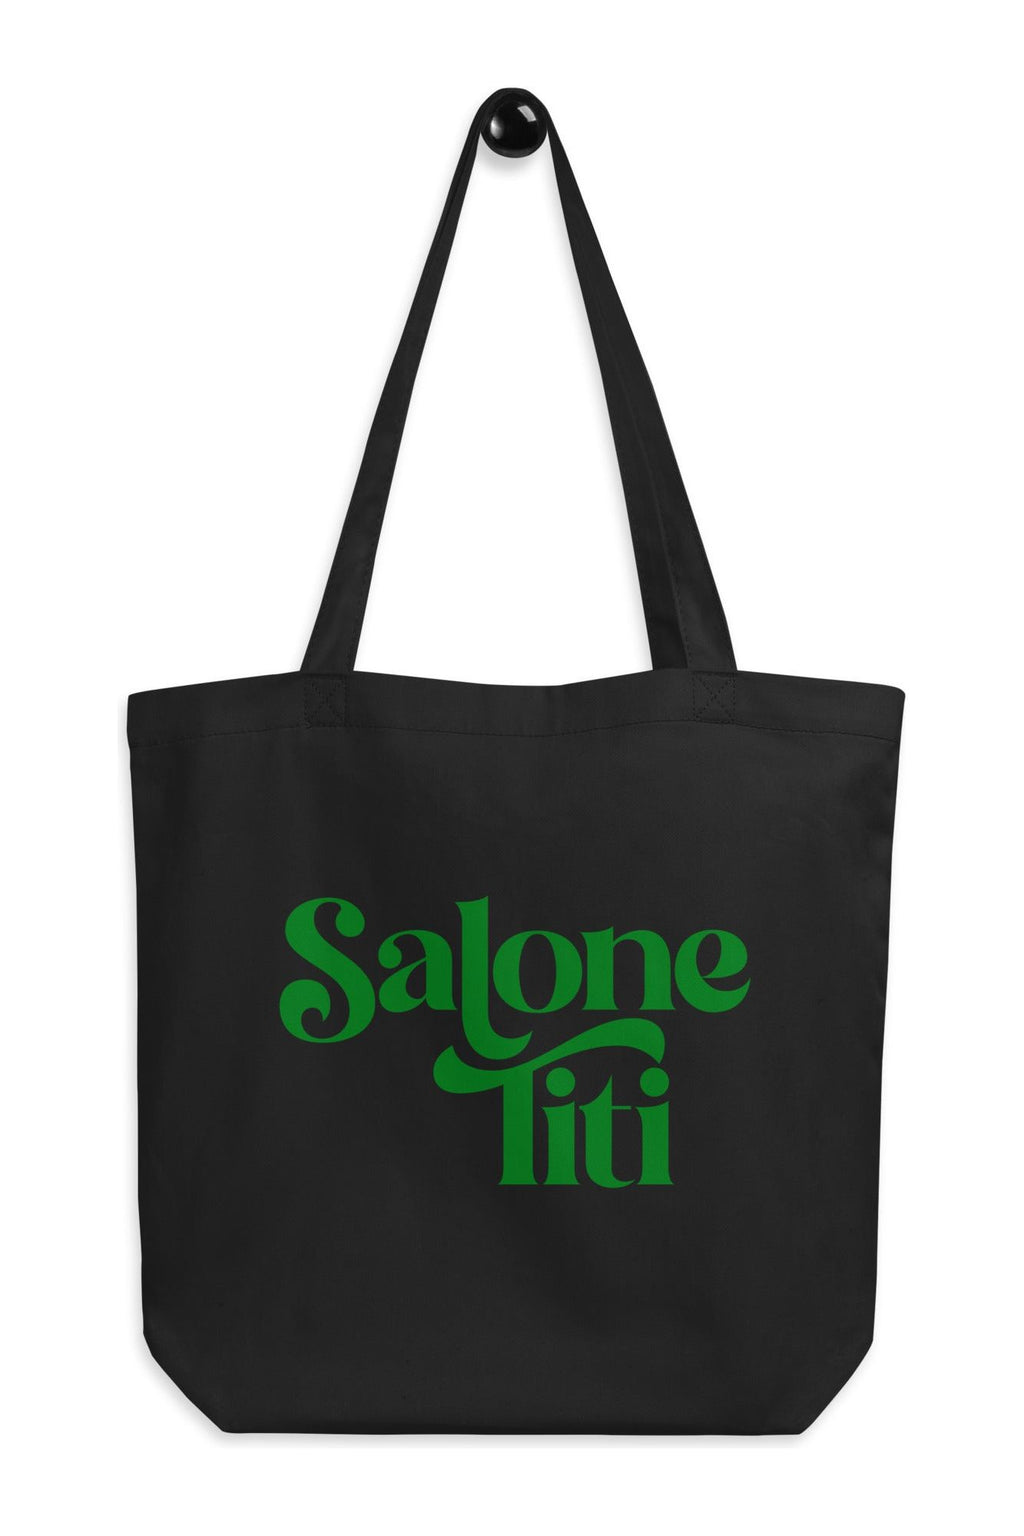 Salone Titi Tote Bag-Green - Mission LaneTote